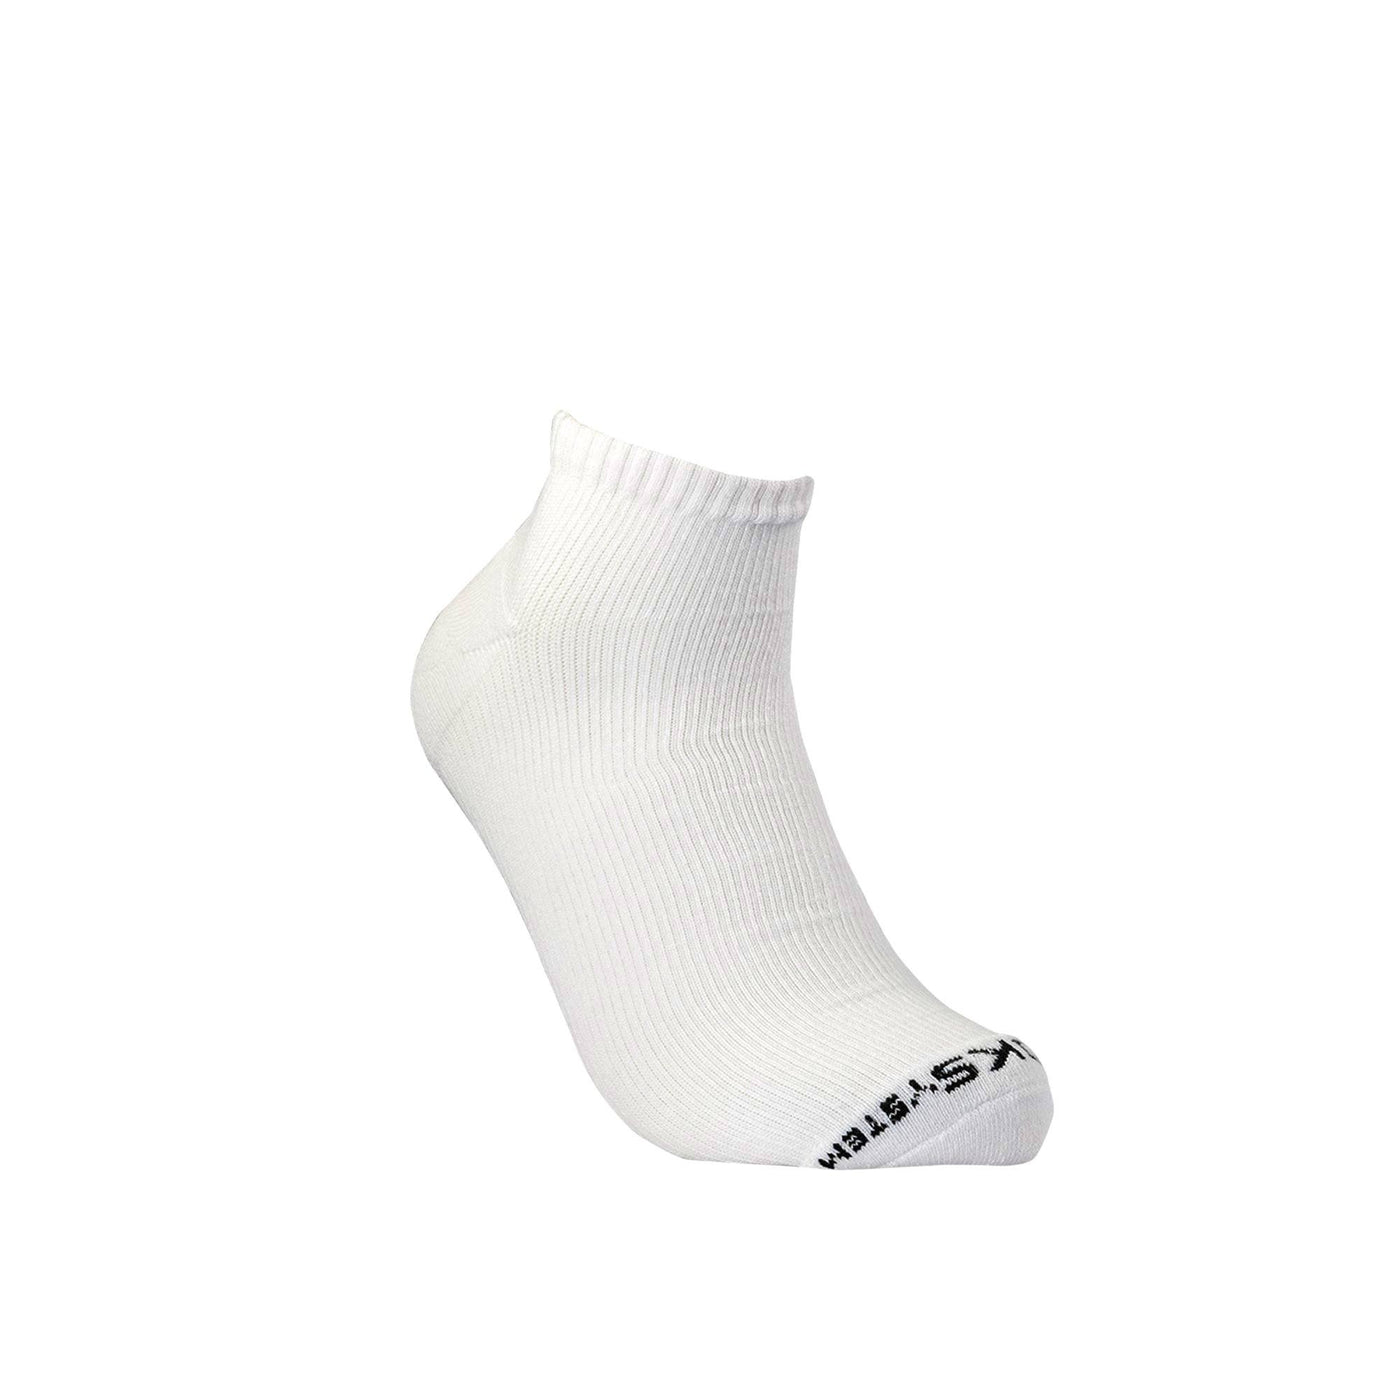 White Athletic Quarter Sock athletic socks ArchTek